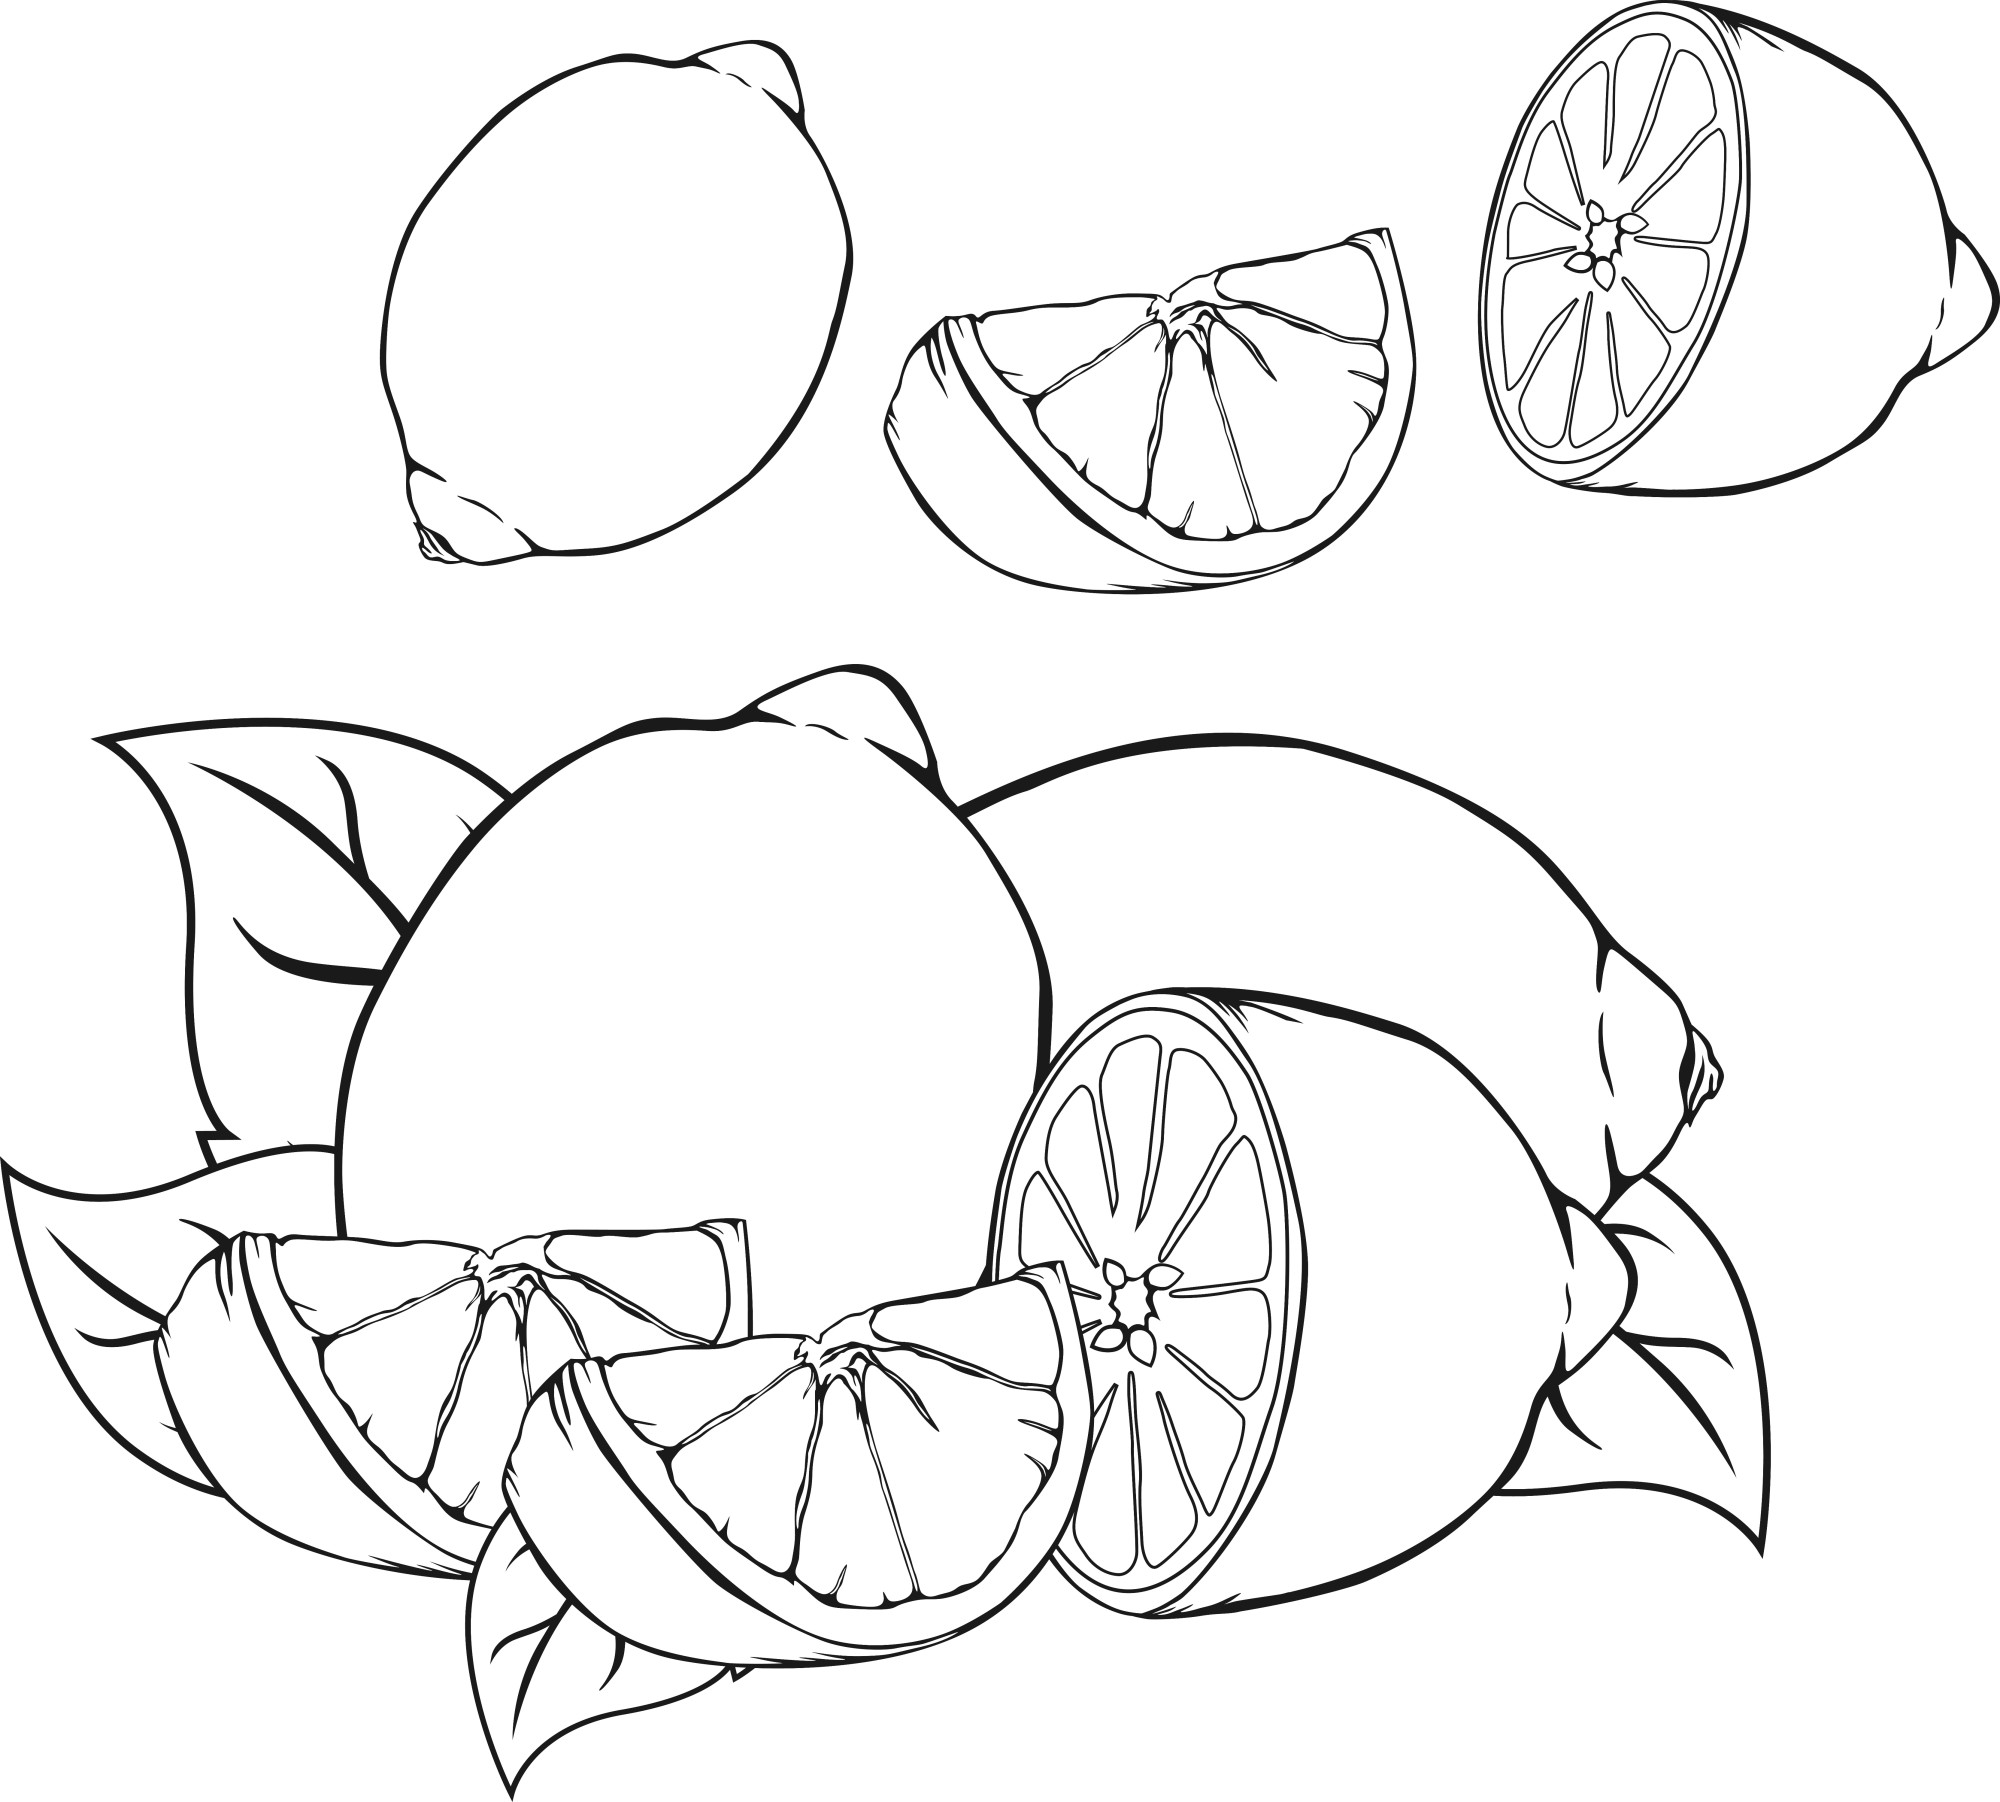 Раскраска для детей: лимоны с половинками дольками и листьями